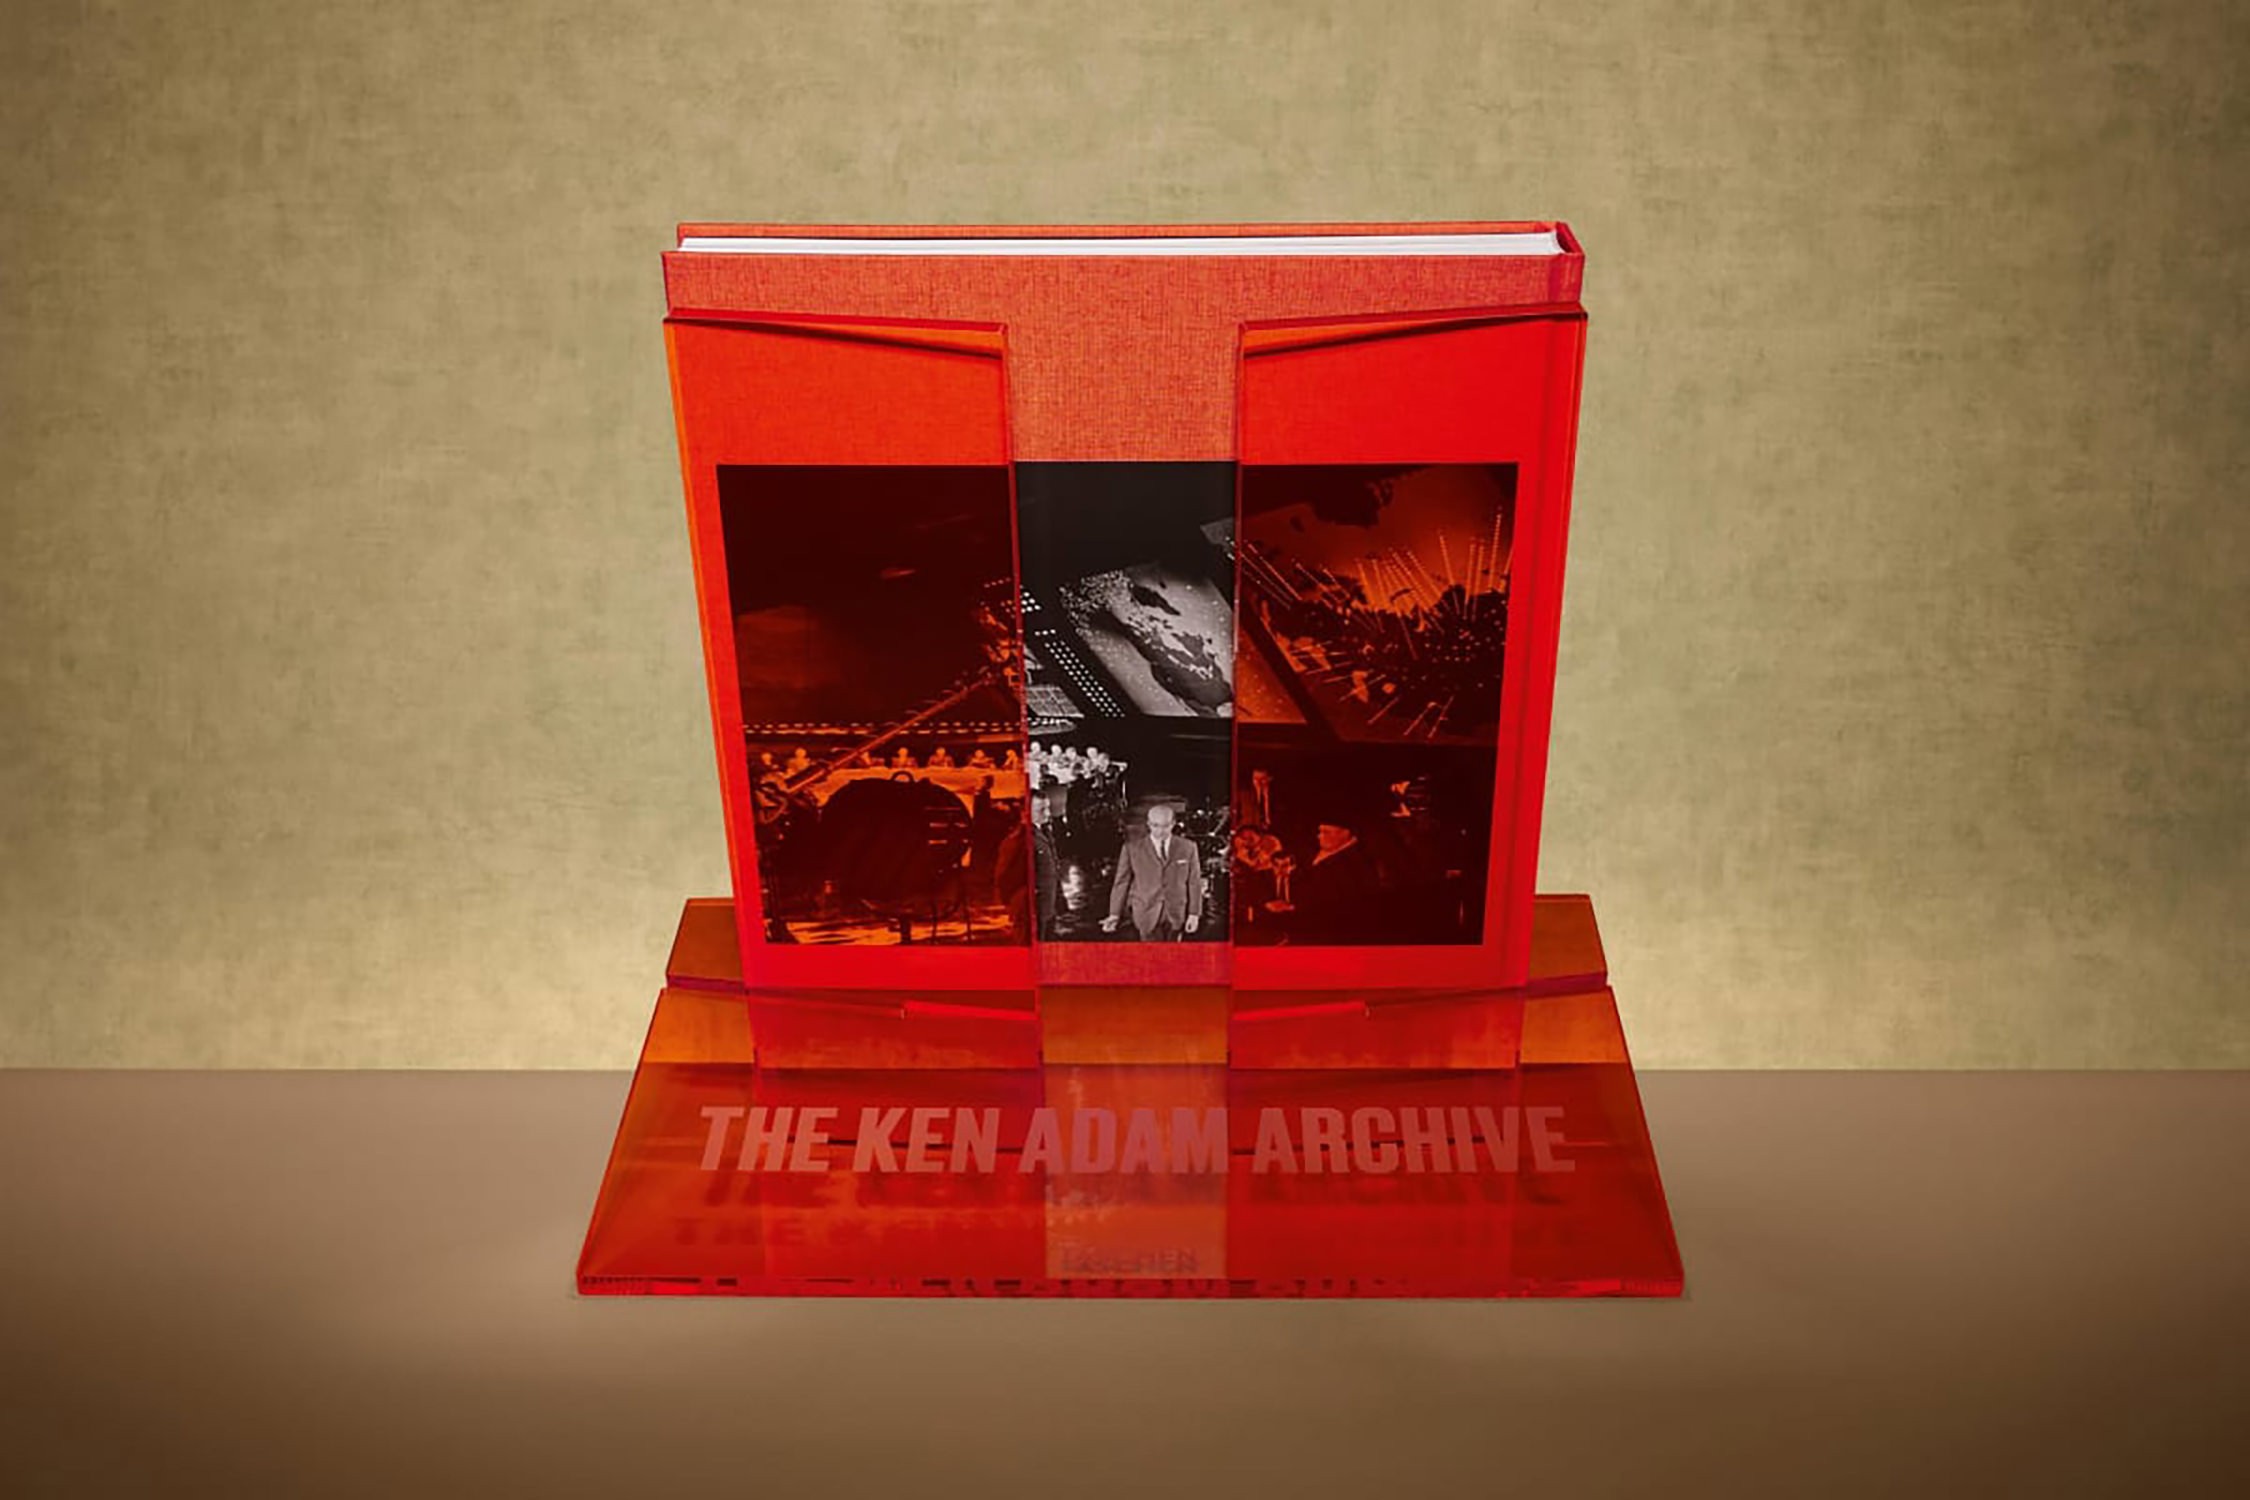 The Ken Adam Archive- Prototype Shown